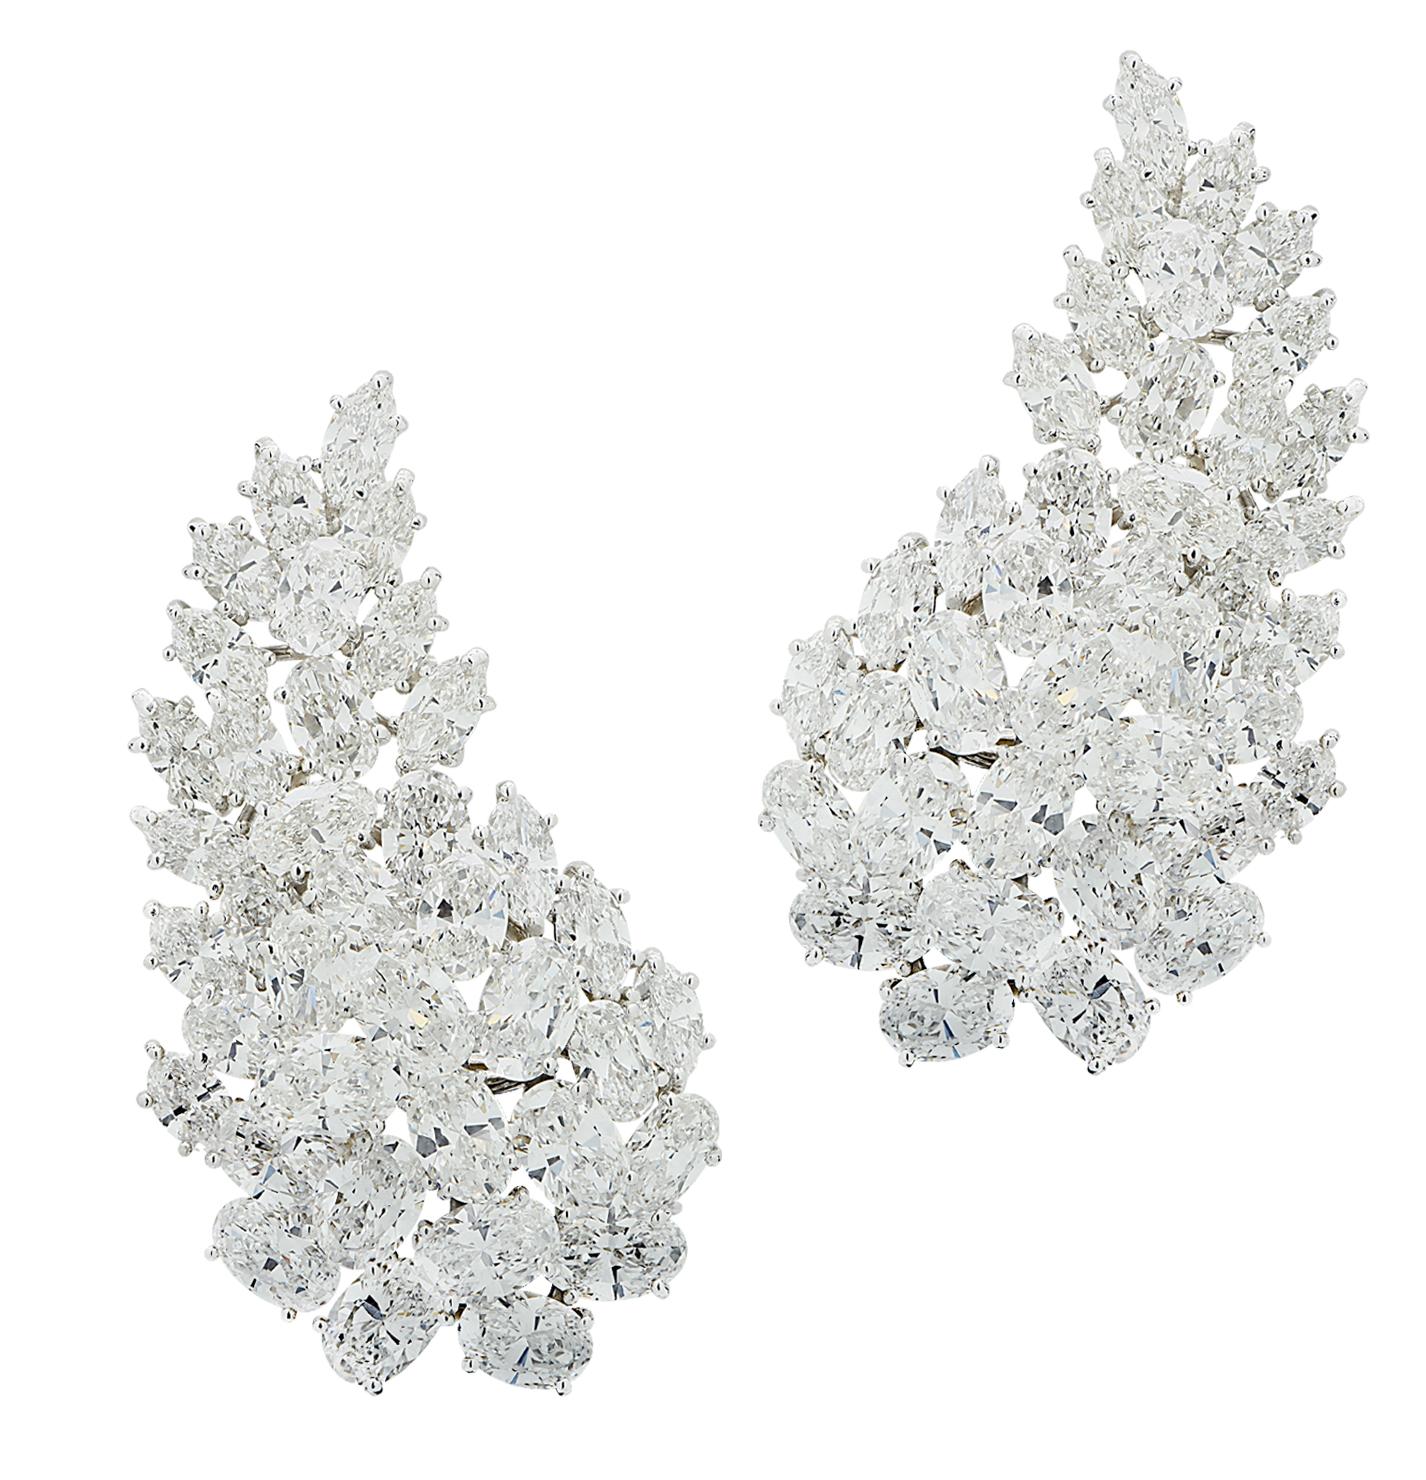 Women's Hammerman Brothers 30 Carat Diamond Earrings For Sale